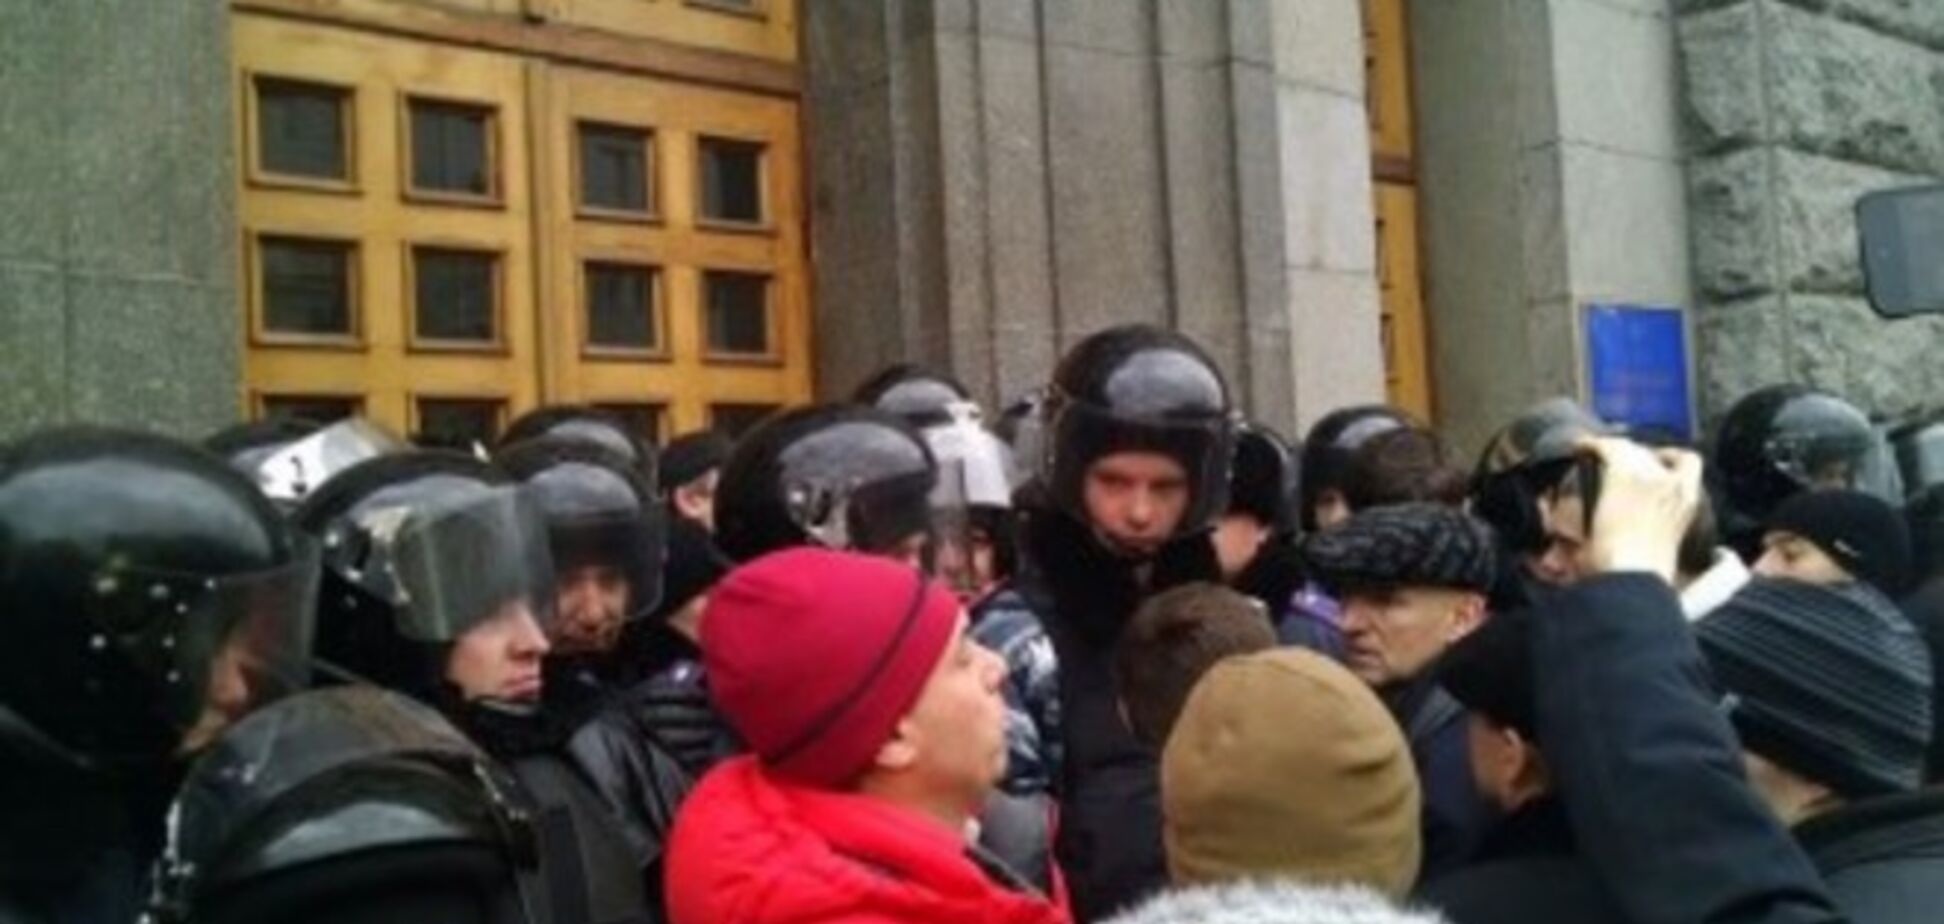 Під Харківську міськраду прийшли з пікетом проукраїнські активісти, приготувавши сміттєвий бак